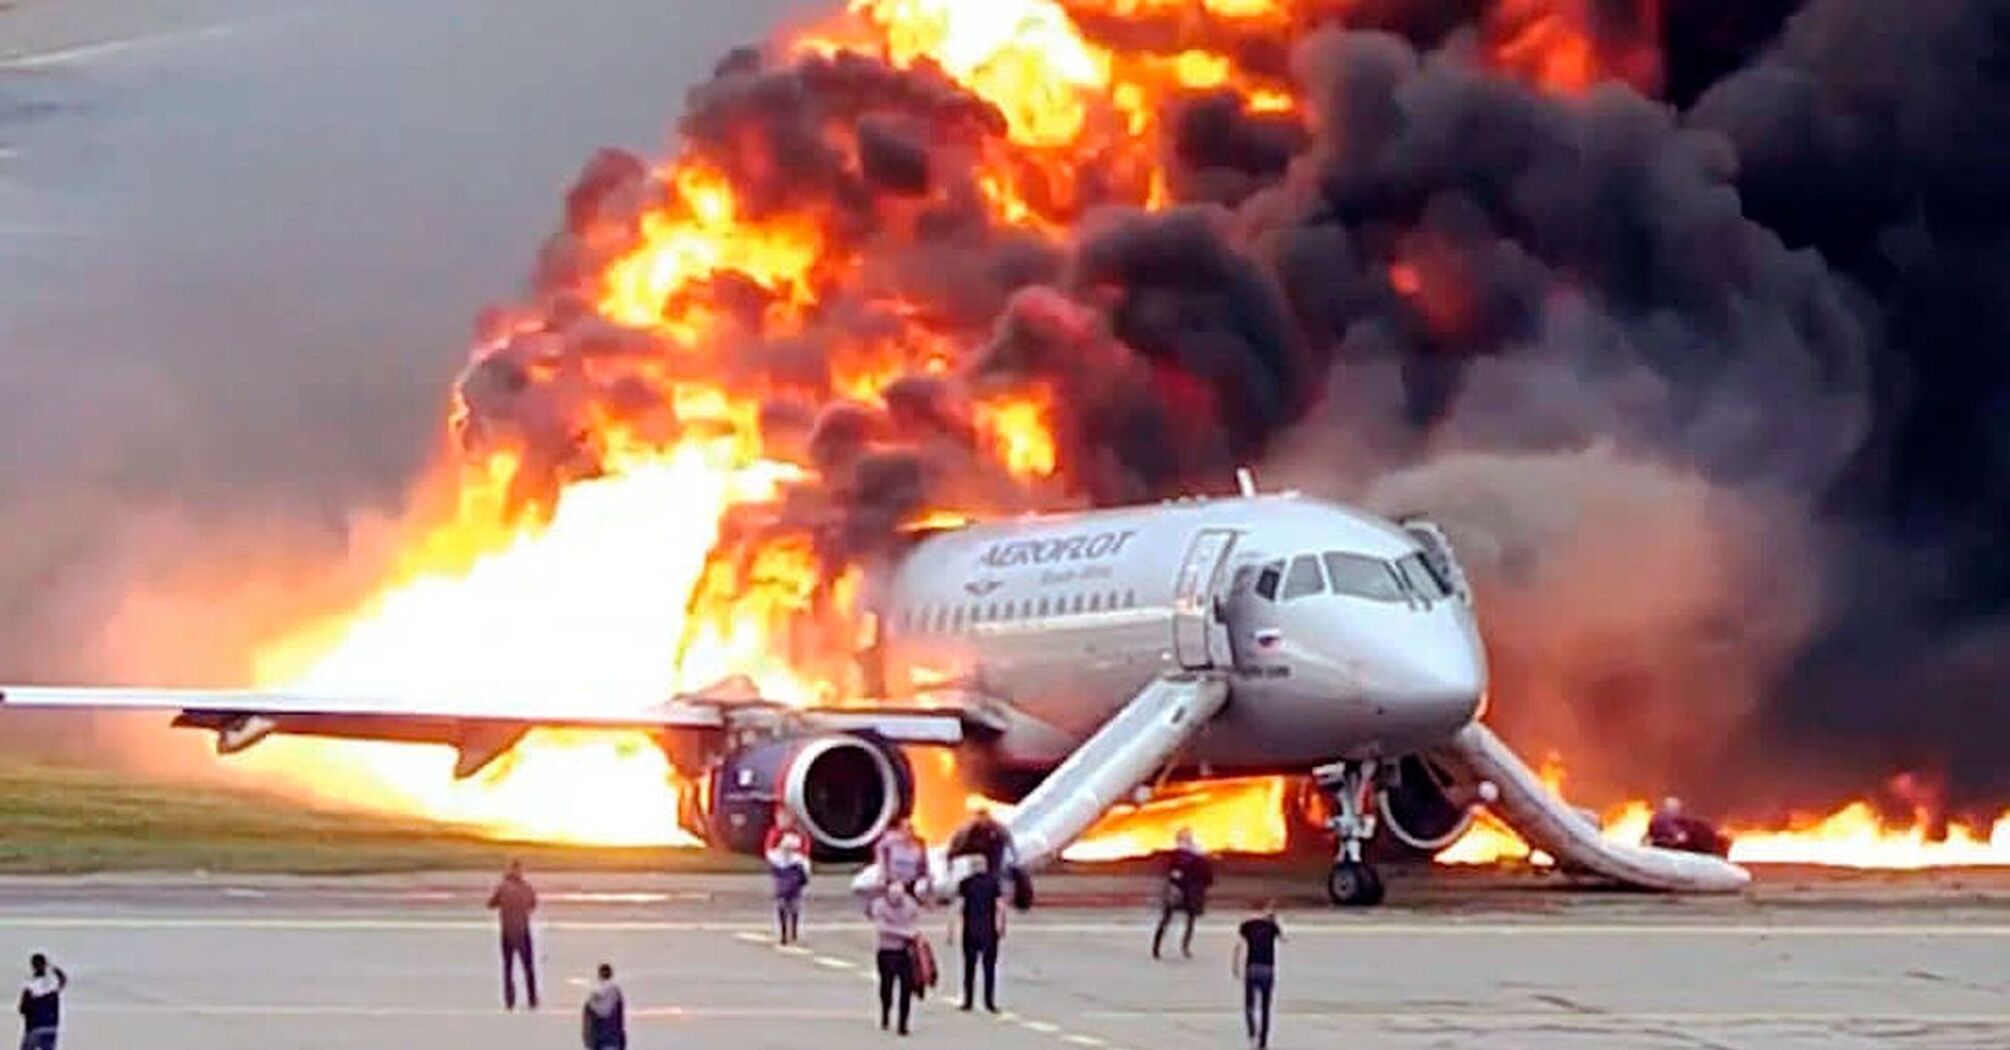 В Подмосковье упал вылетевший из авиазавода пассажирский самолет Sukhoi Superjet: есть жертвы (видео, фото с места событий)